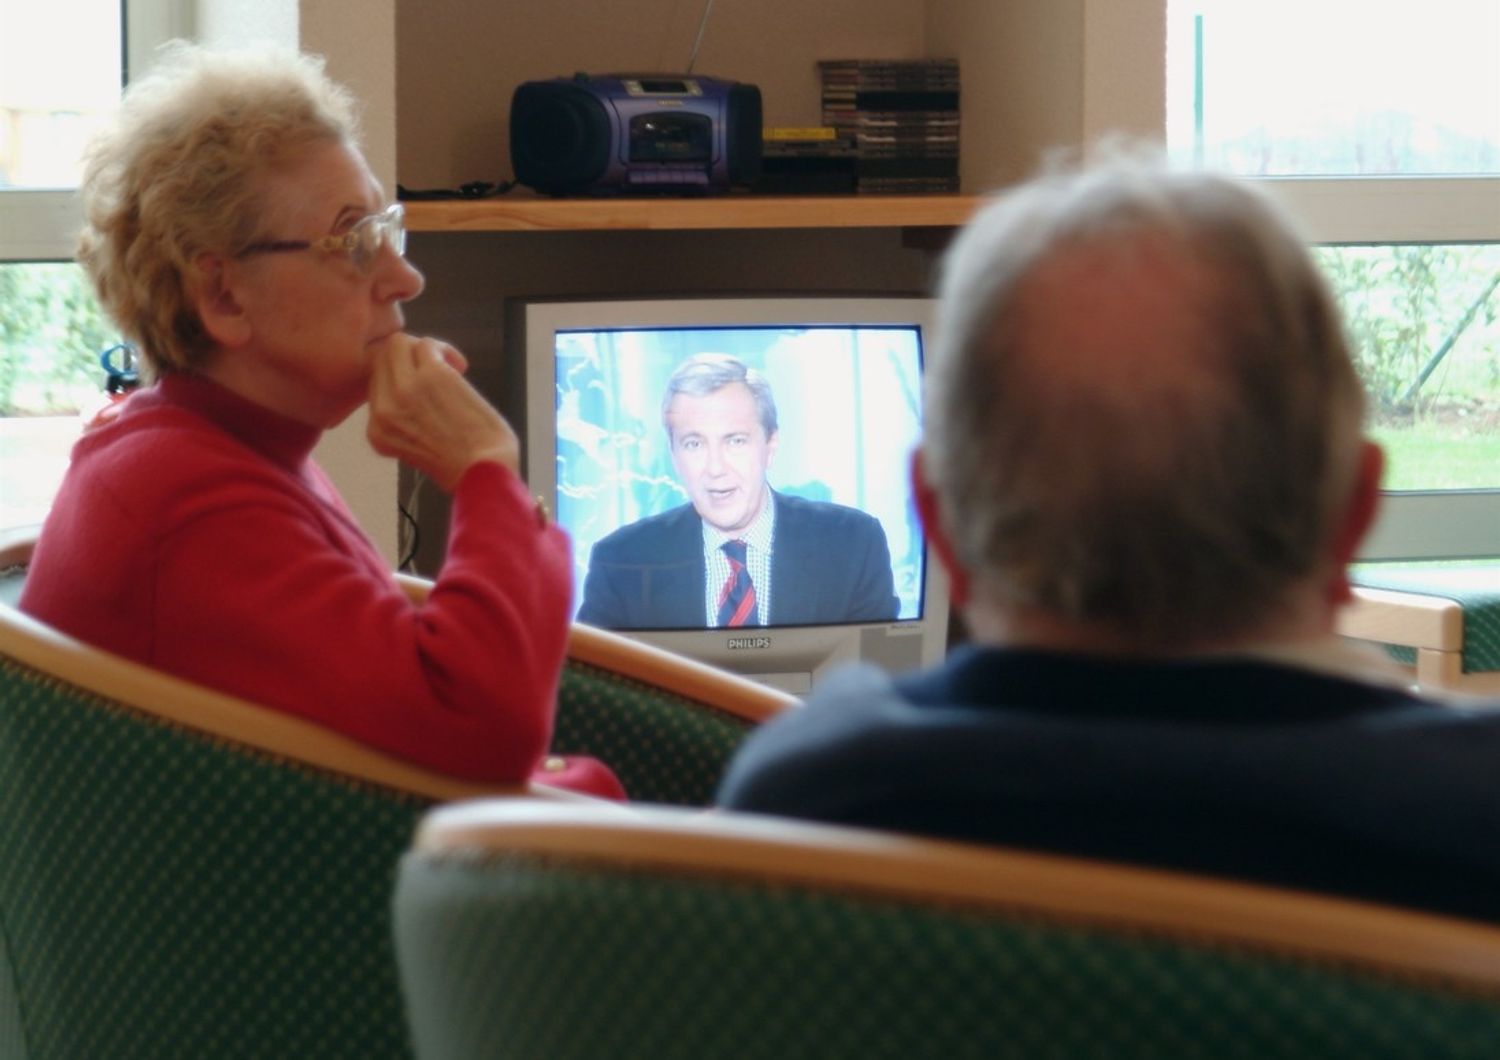 anziani pensionati televisione